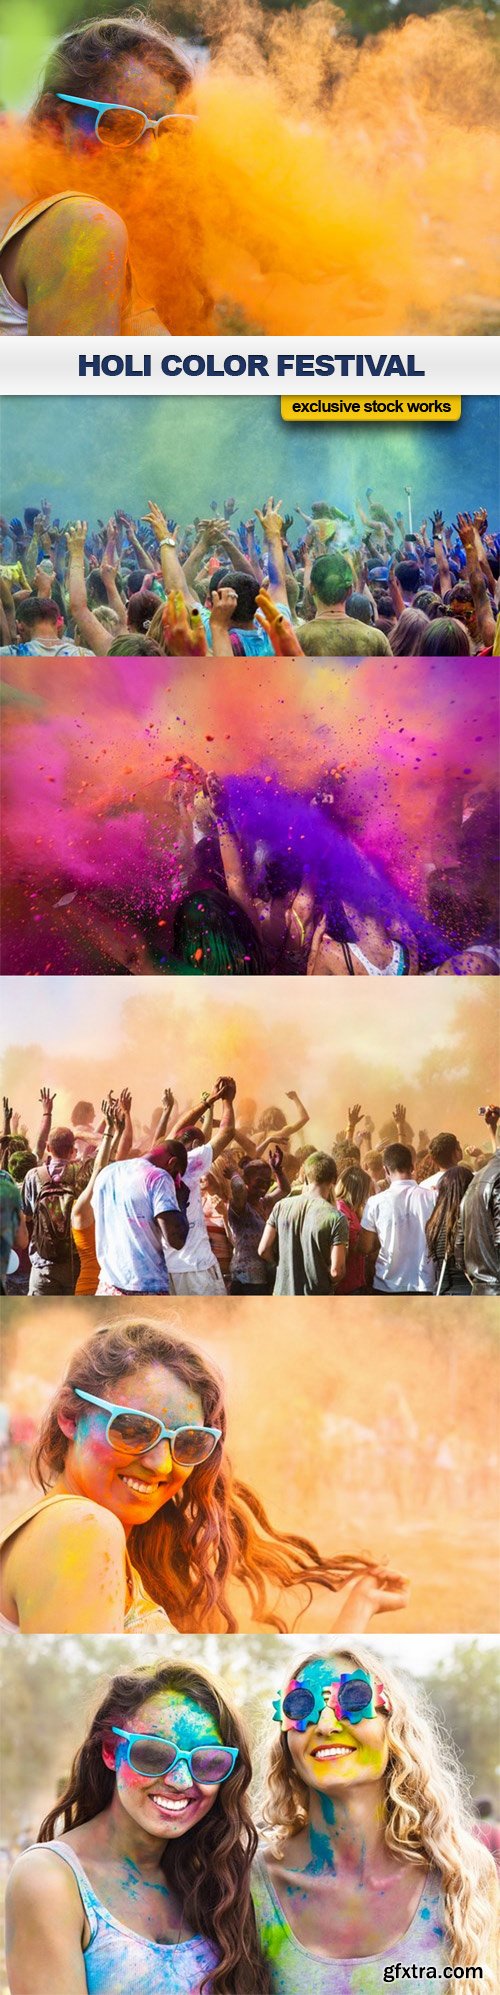 Holi Color Festival - 6 UHQ JPEG